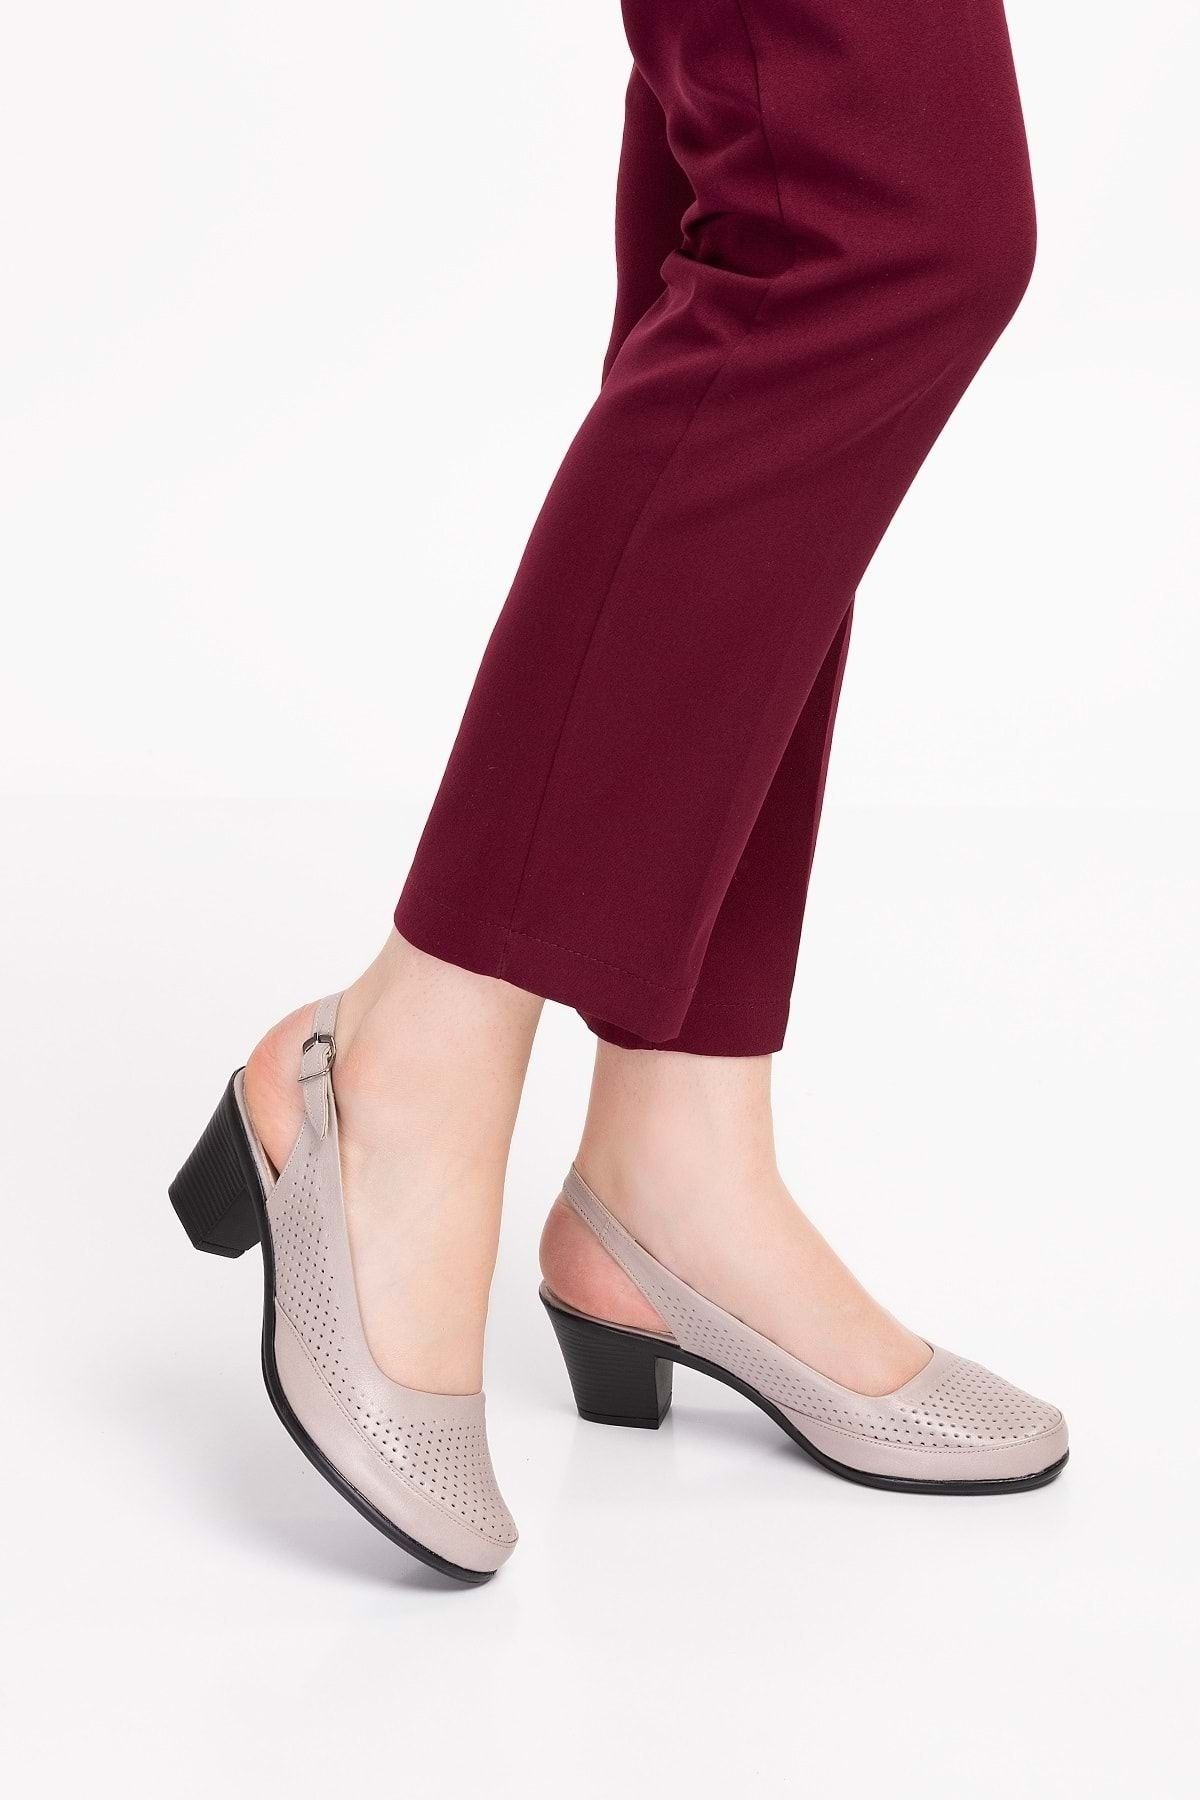 Gondol Kadın Hakiki Deri Klasik Topuklu Ayakkabı Vdt.272 - Gri - 42